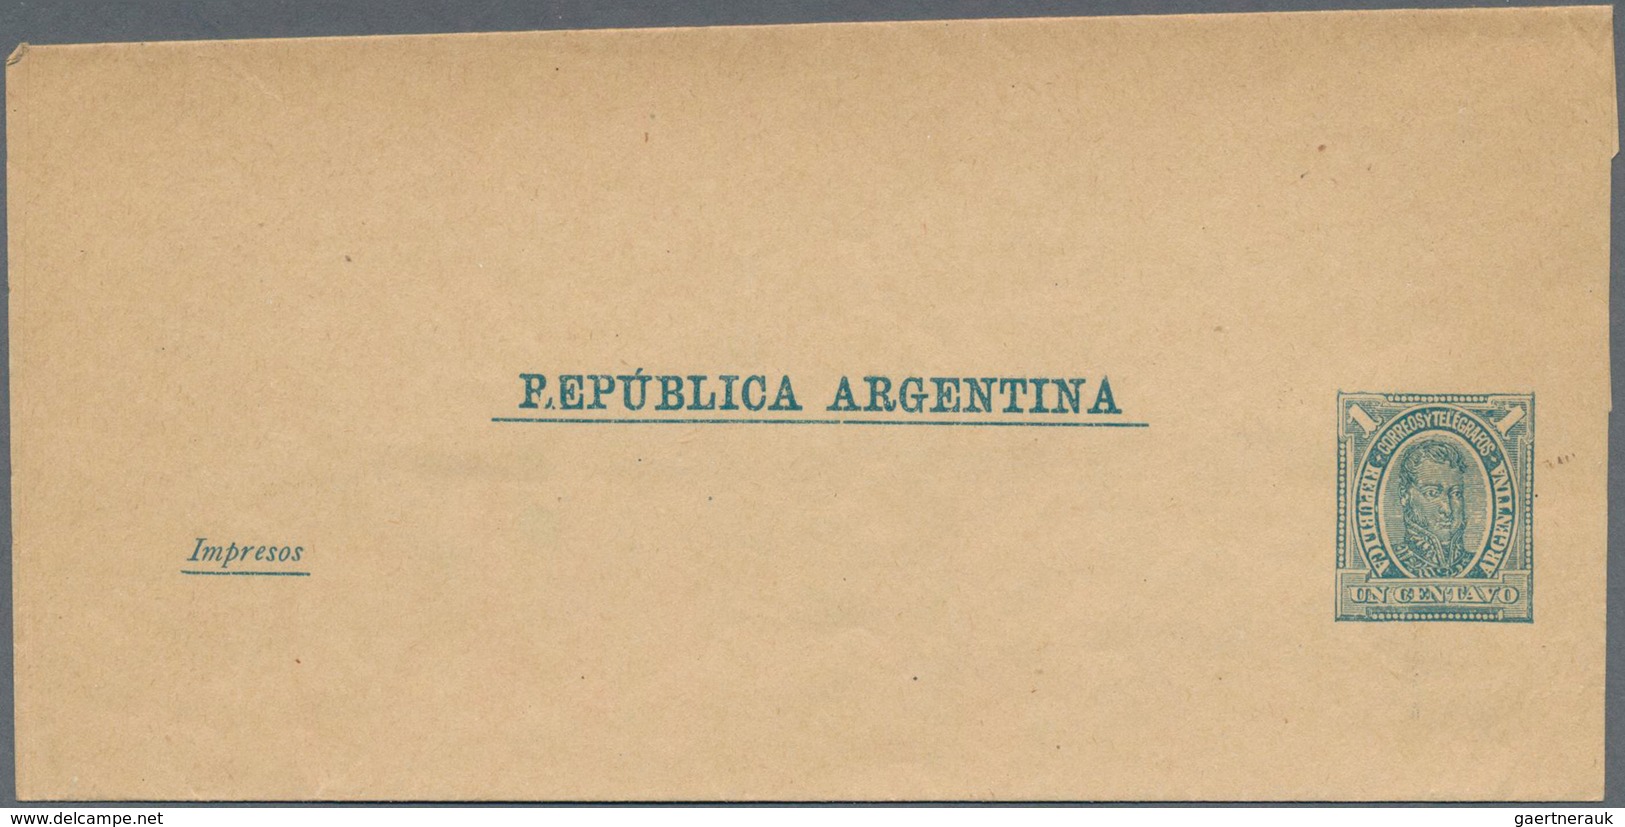 Argentinien - Ganzsachen: 1890 Unused Wrapper 1 Centavo Green On Buff Wove Paper, Printing Error Bro - Ganzsachen